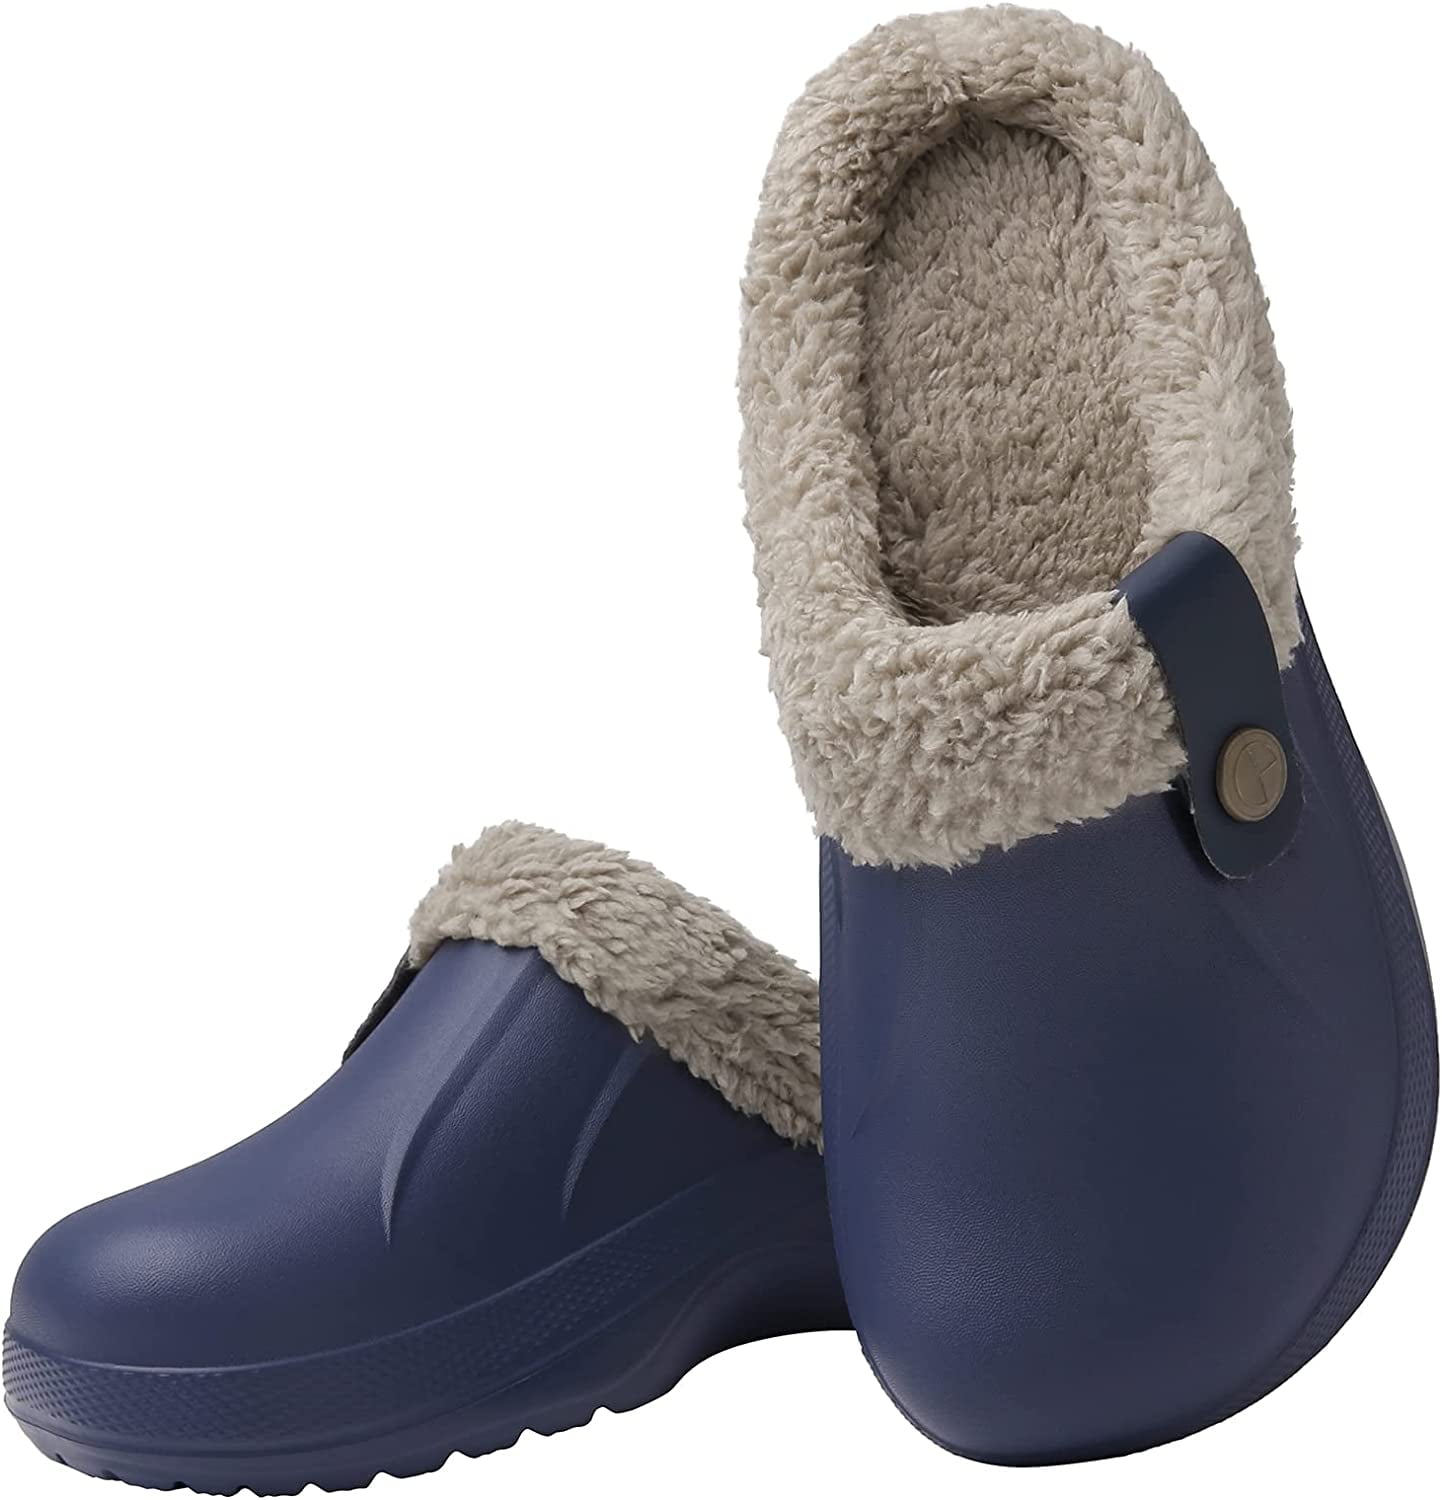 DanceeMangoo Winter Waterproof Slippers Women Men Fur Lined Clogs Garden  Shoes Warm House Slippers Indoor Outdoor Mules - Walmart.com